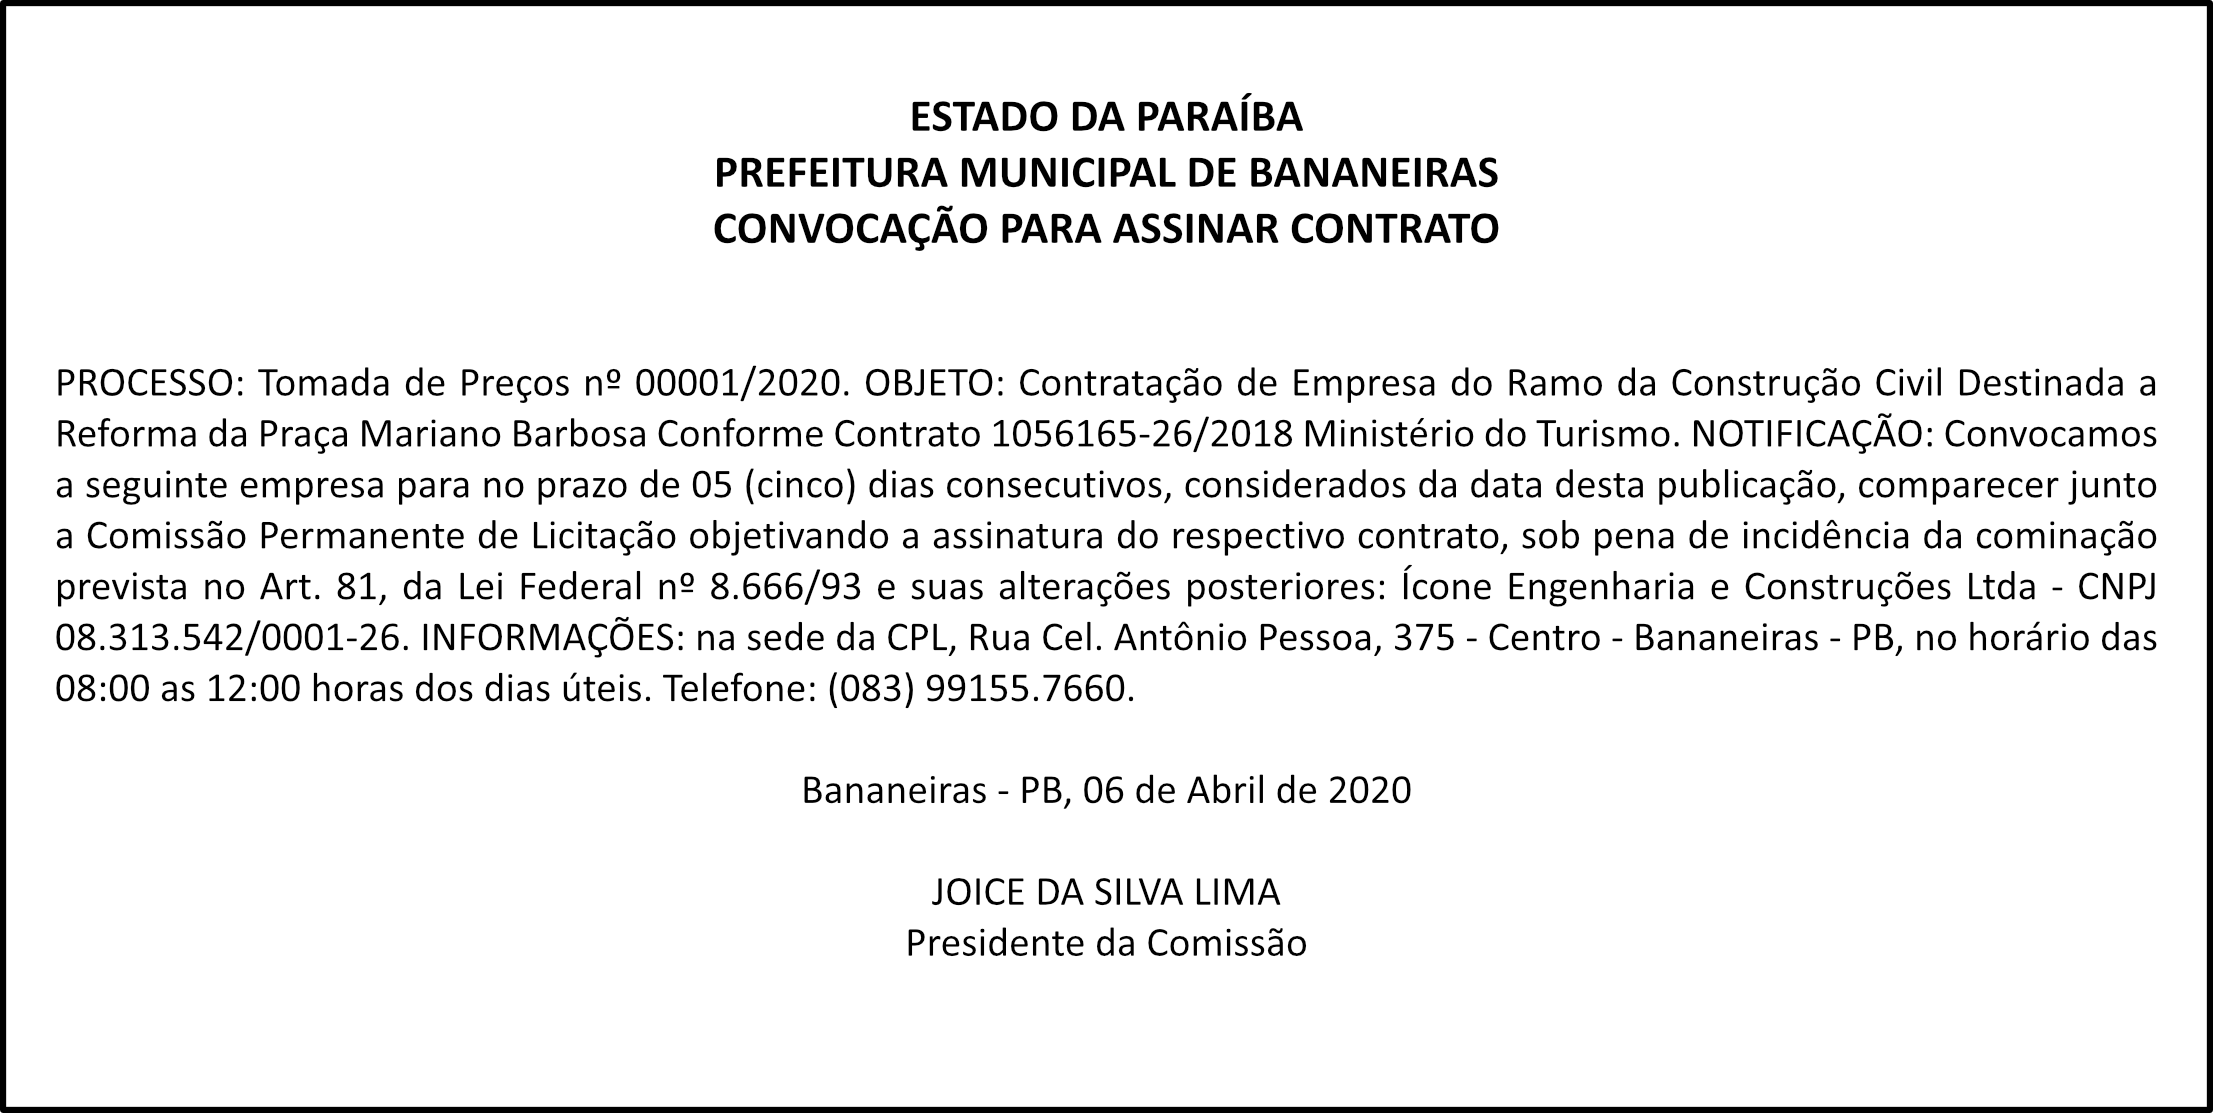 PREFEITURA MUNICIPAL DE BANANEIRAS – CONVOCAÇÃO PARA ASSINAR CONTRATO PROCESSO: TOMADA DE PREÇOS nº 00001/2020